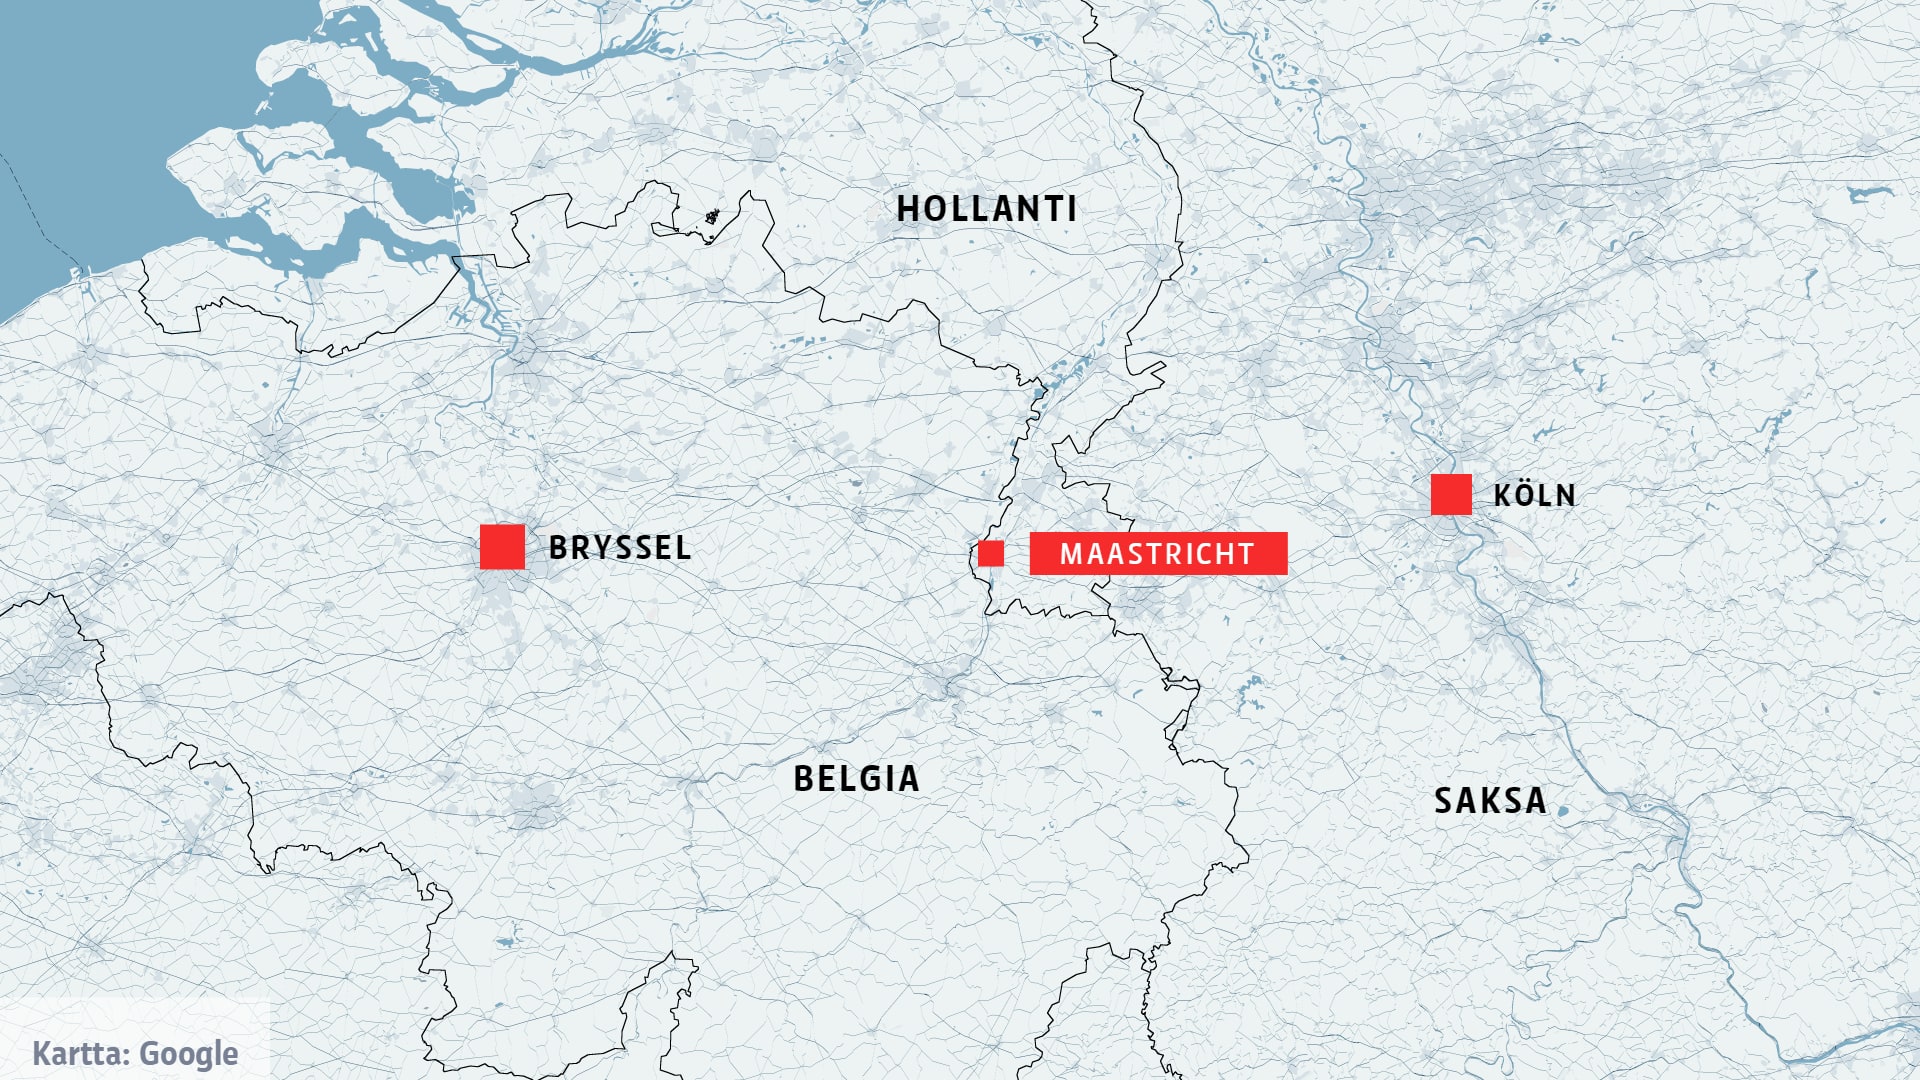 Kartta, jossa näkyvät Bryssel, Maastricht ja Köln. 